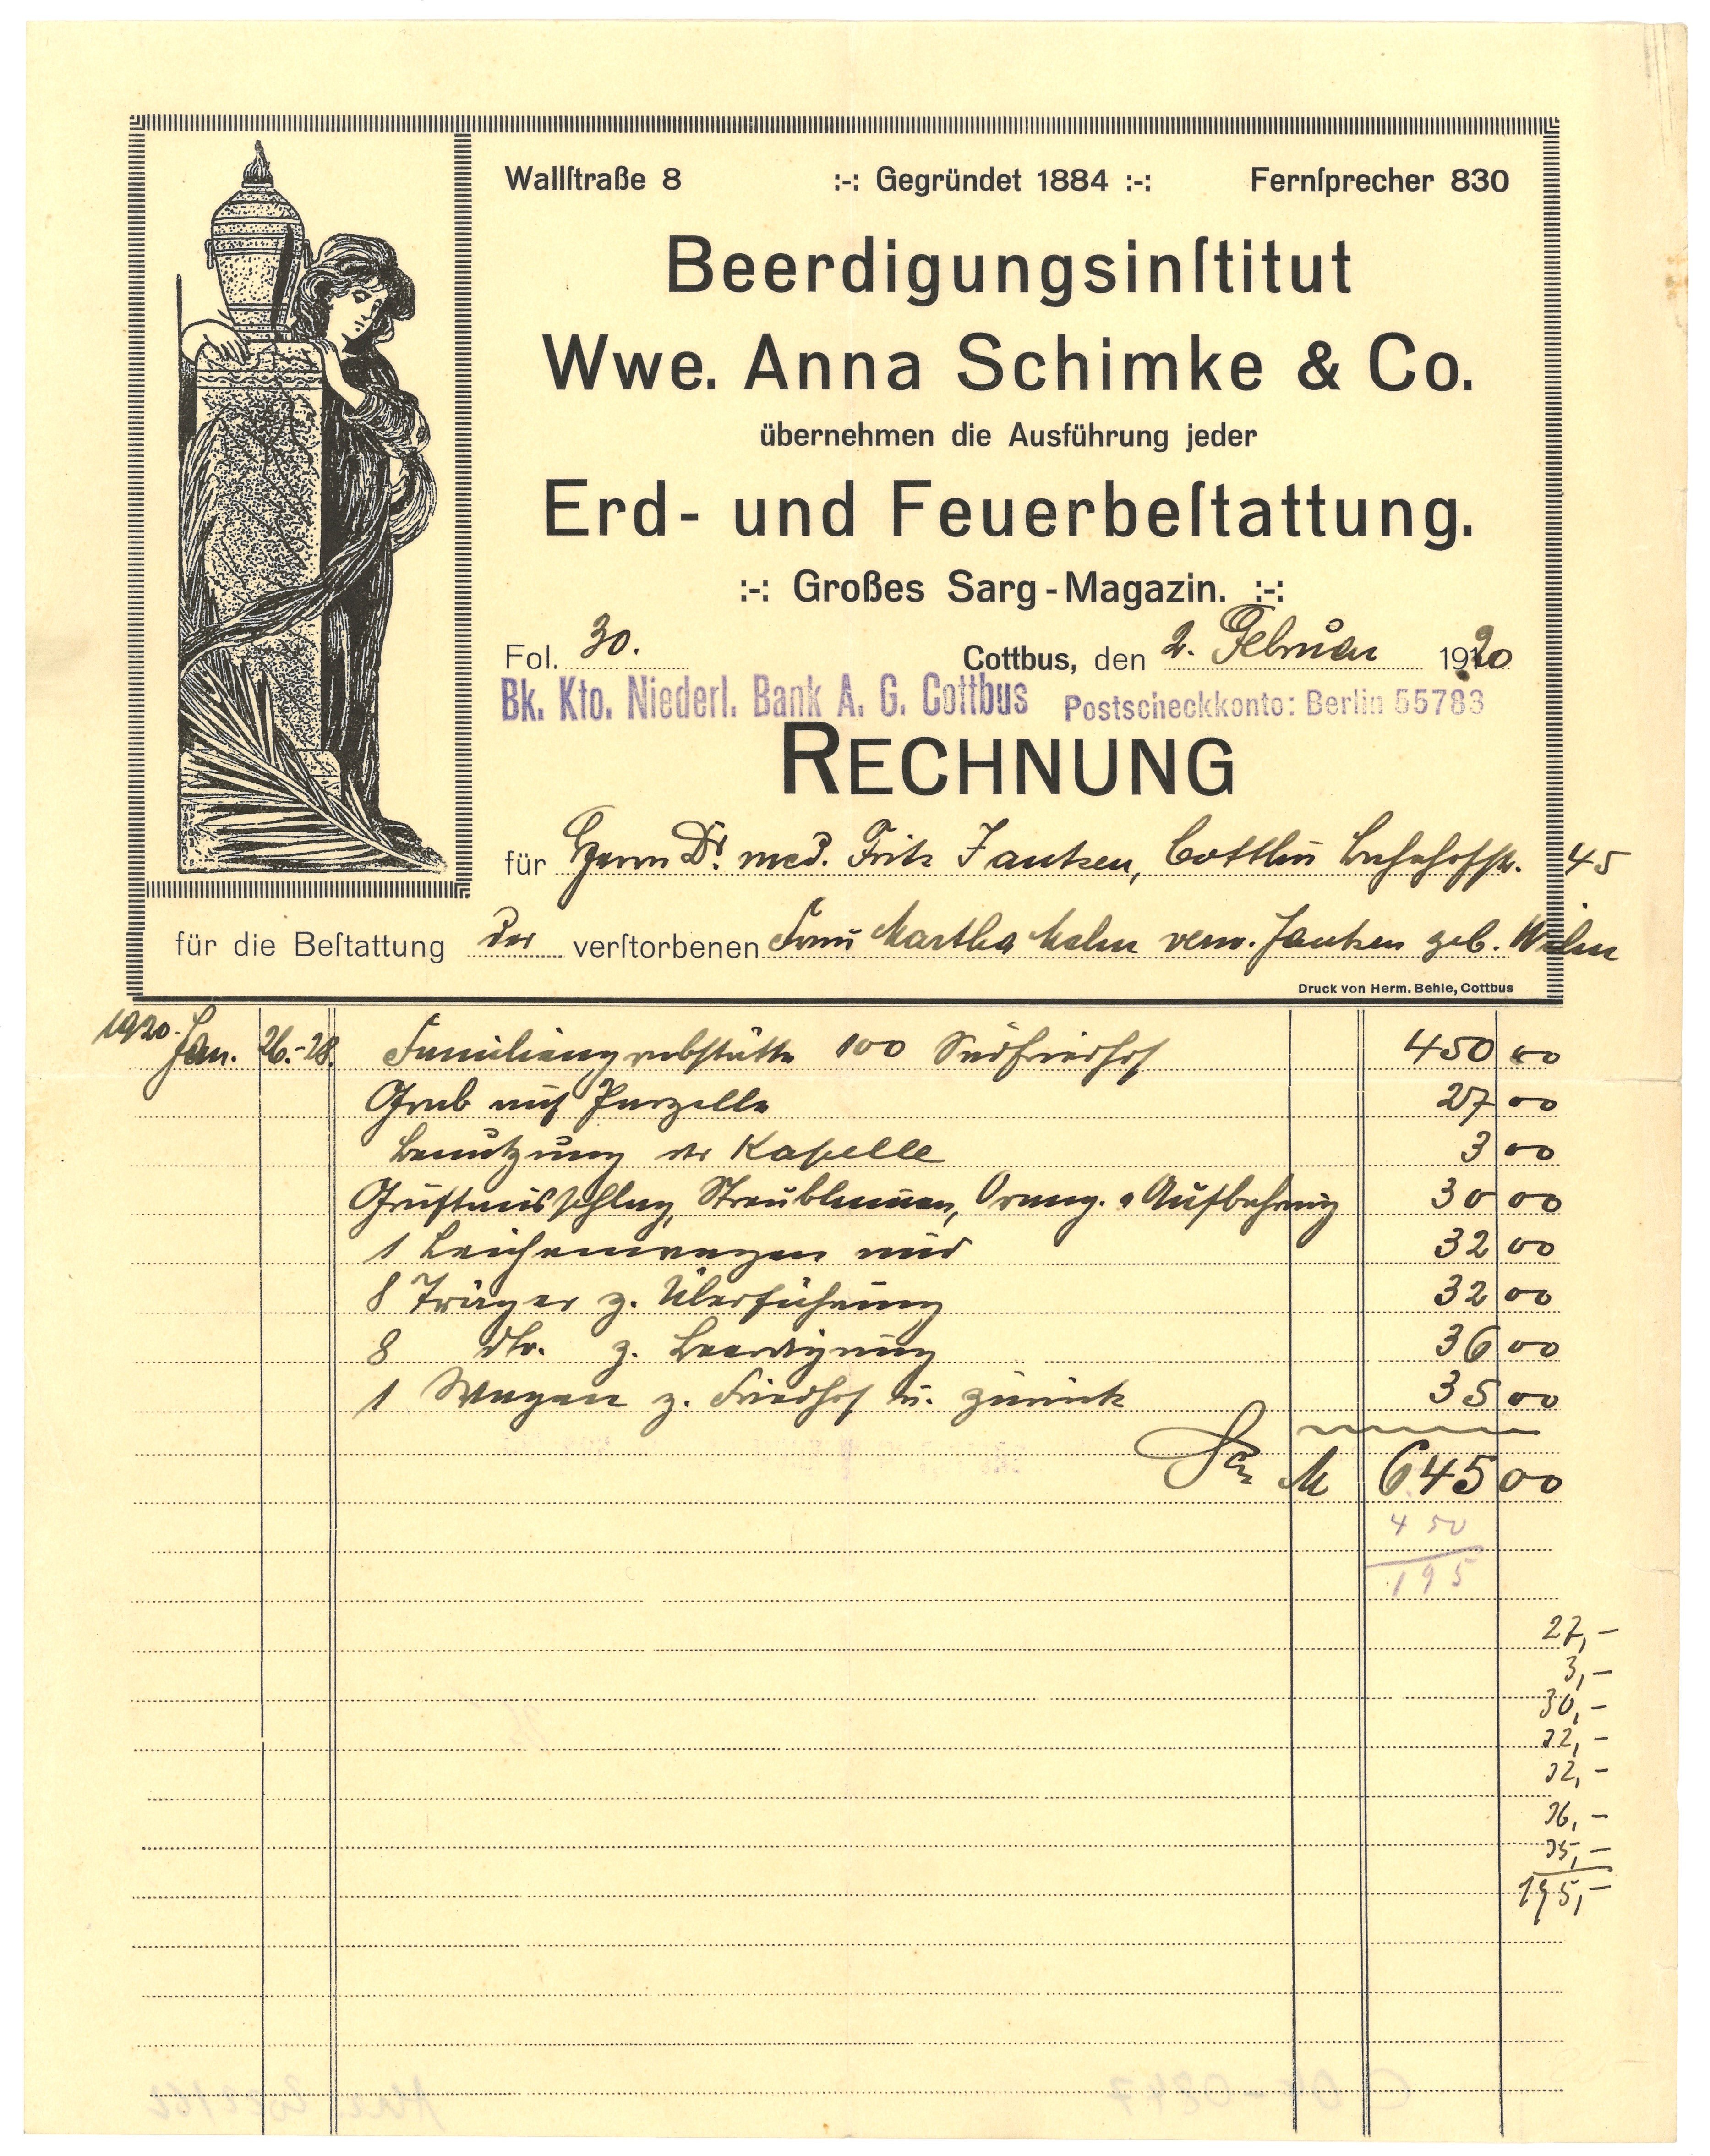 Rechnung des Beerdigungsinstituts Wwe. Anna Schimke & Co. in Cottbus 1920 (Landesgeschichtliche Vereinigung für die Mark Brandenburg e.V., Archiv CC BY)